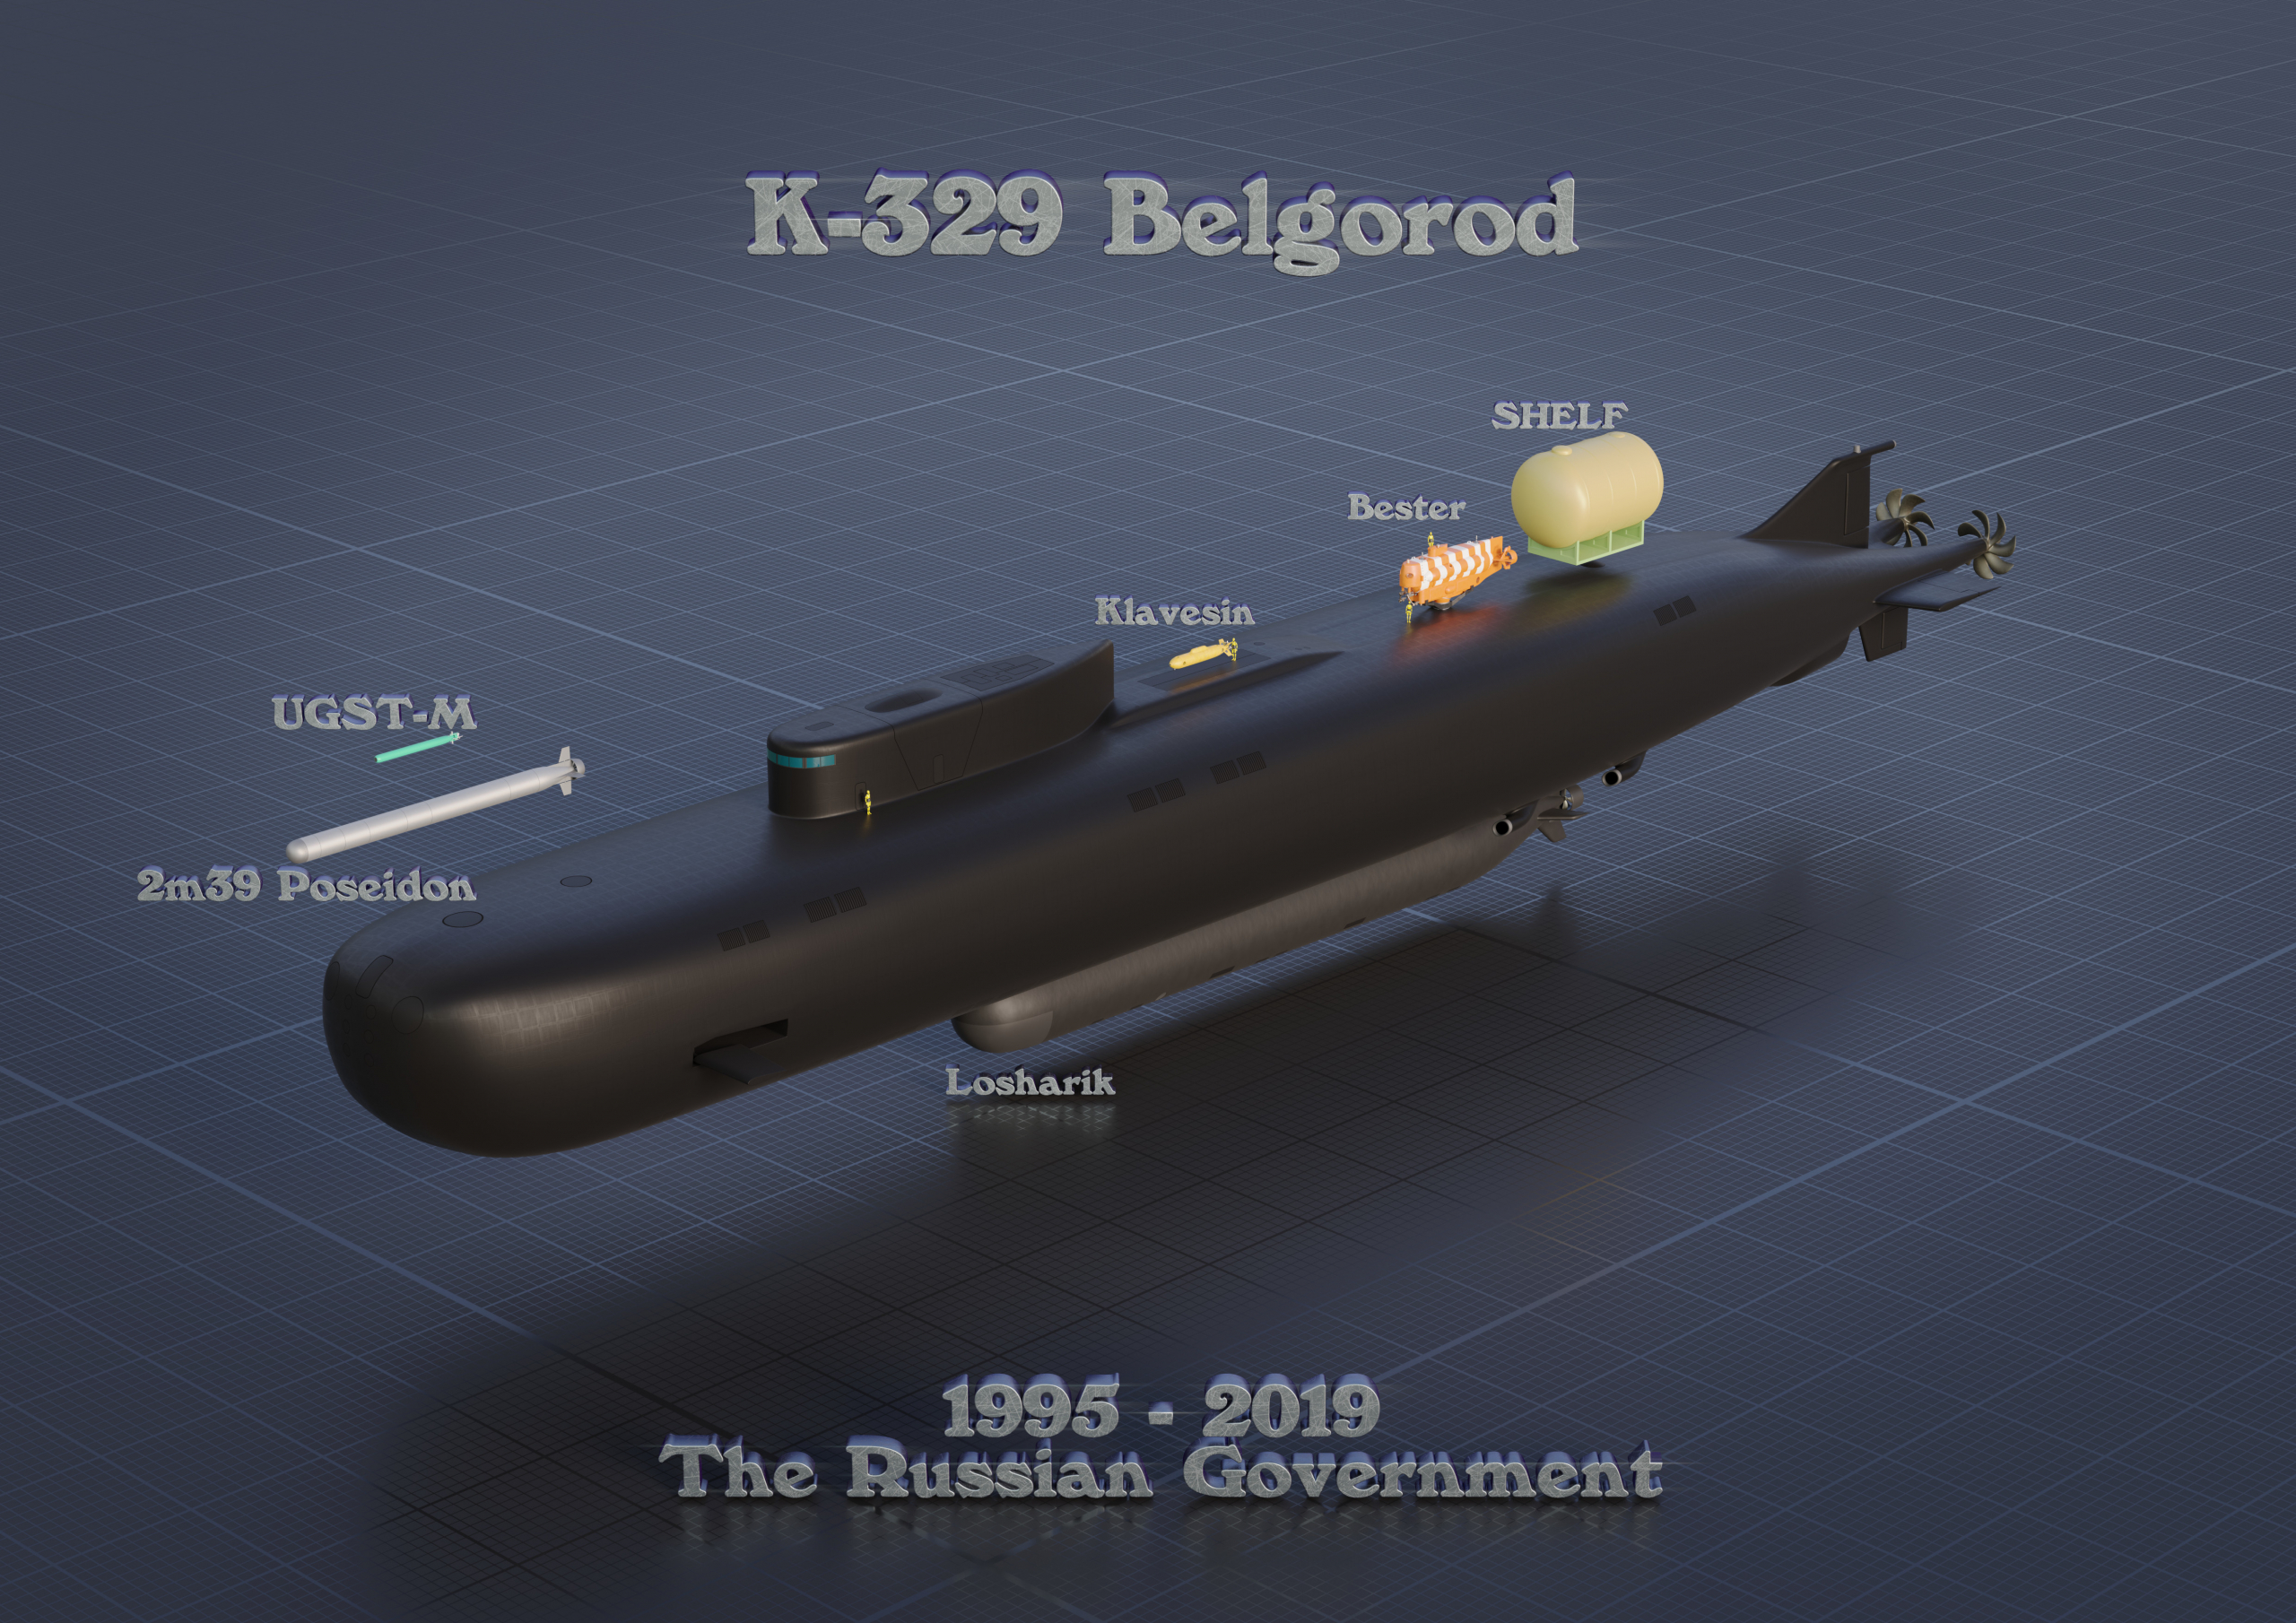 K-239 Belgorod and Equipment - Poster